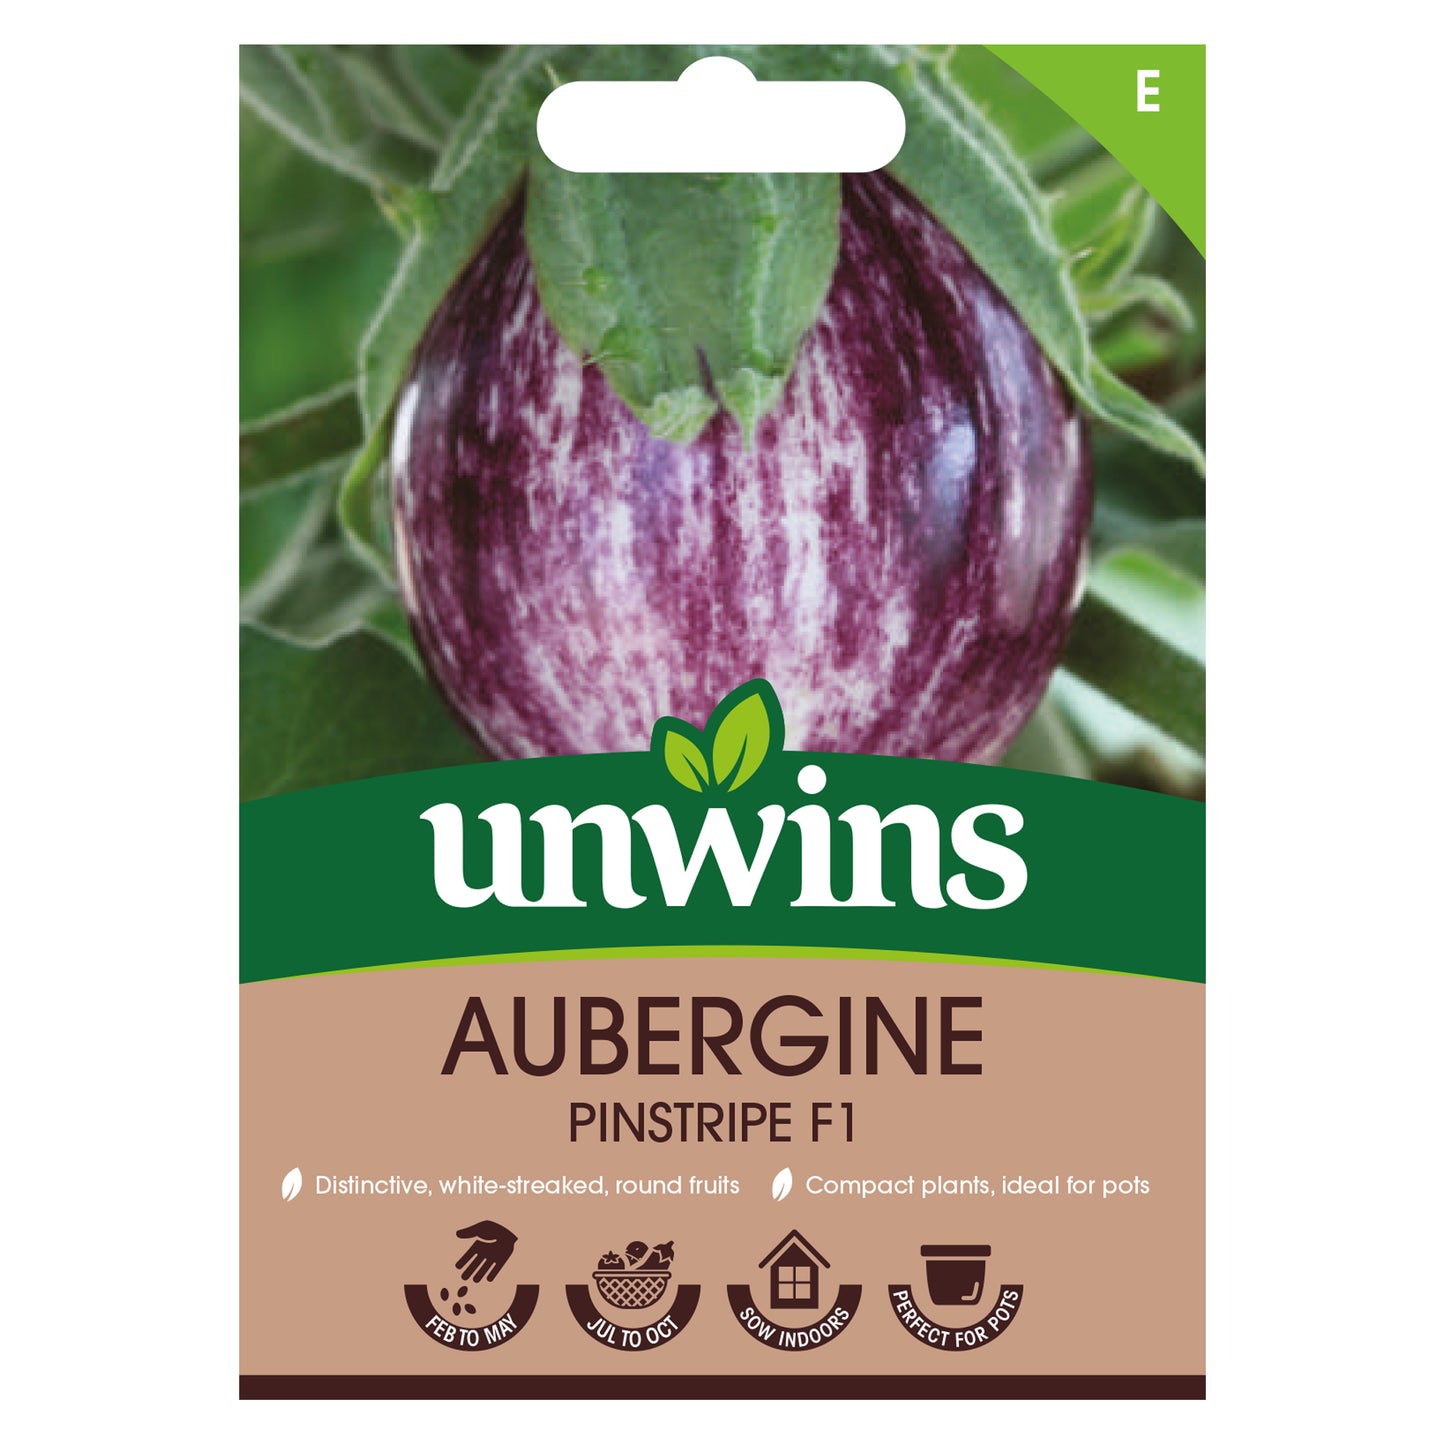 Unwins Aubergine Pinstripe F1 Seeds Front